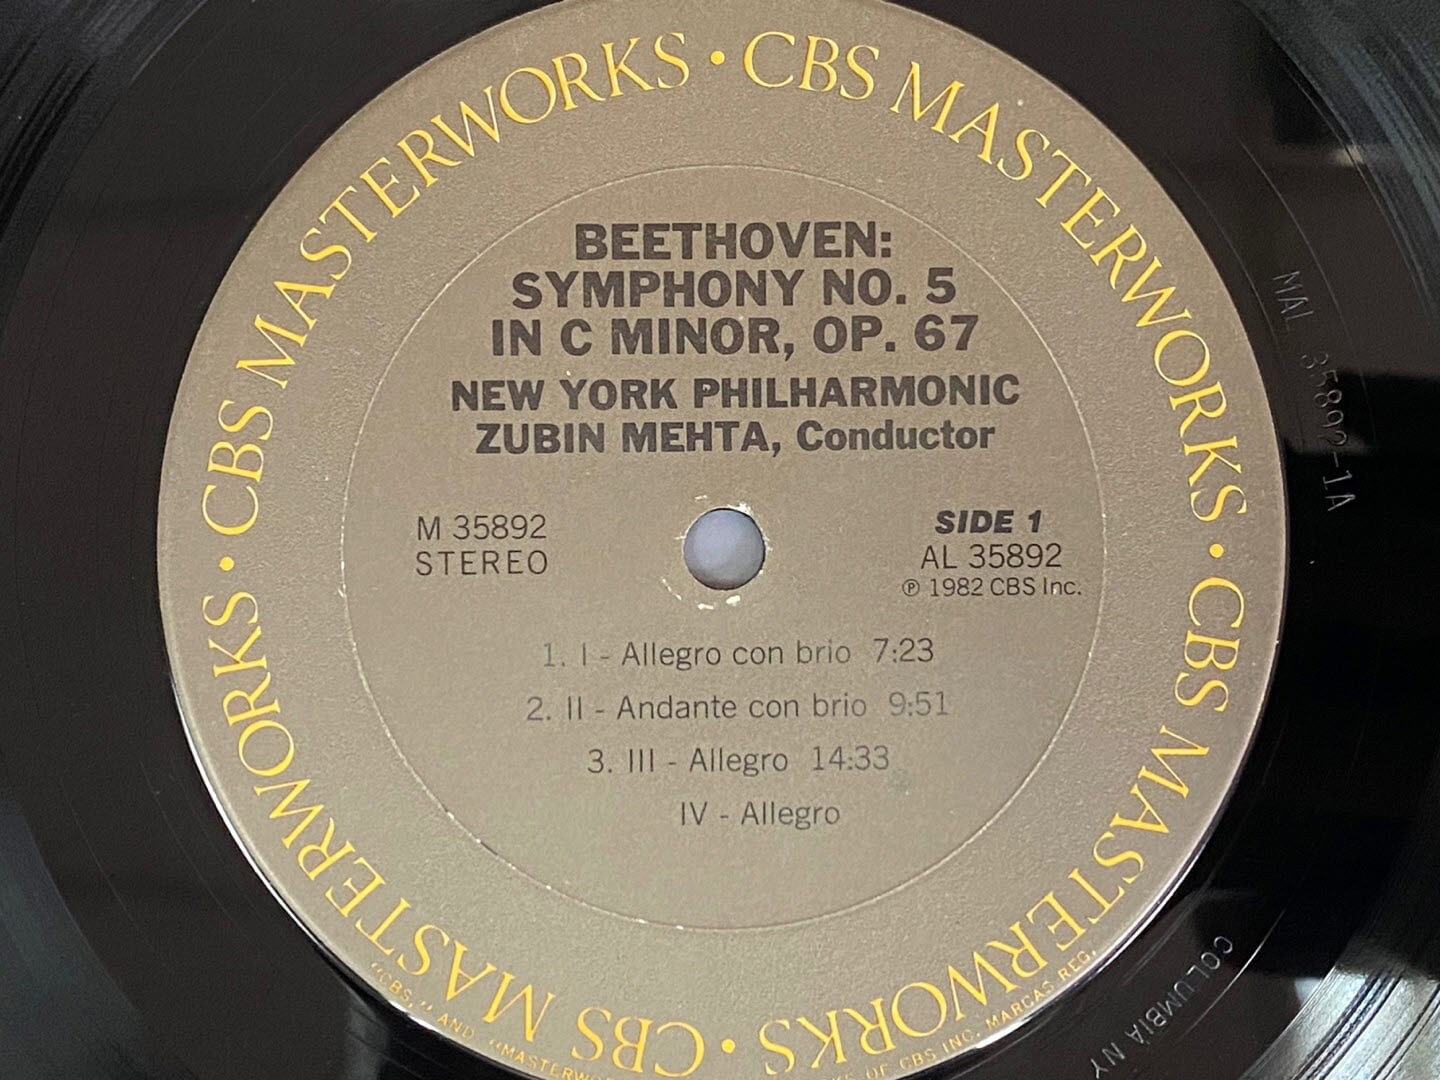 [LP] 주빈 메타 - Zubin Mehta - Beethoven Symphony No.5 & 8 LP [U.S반]